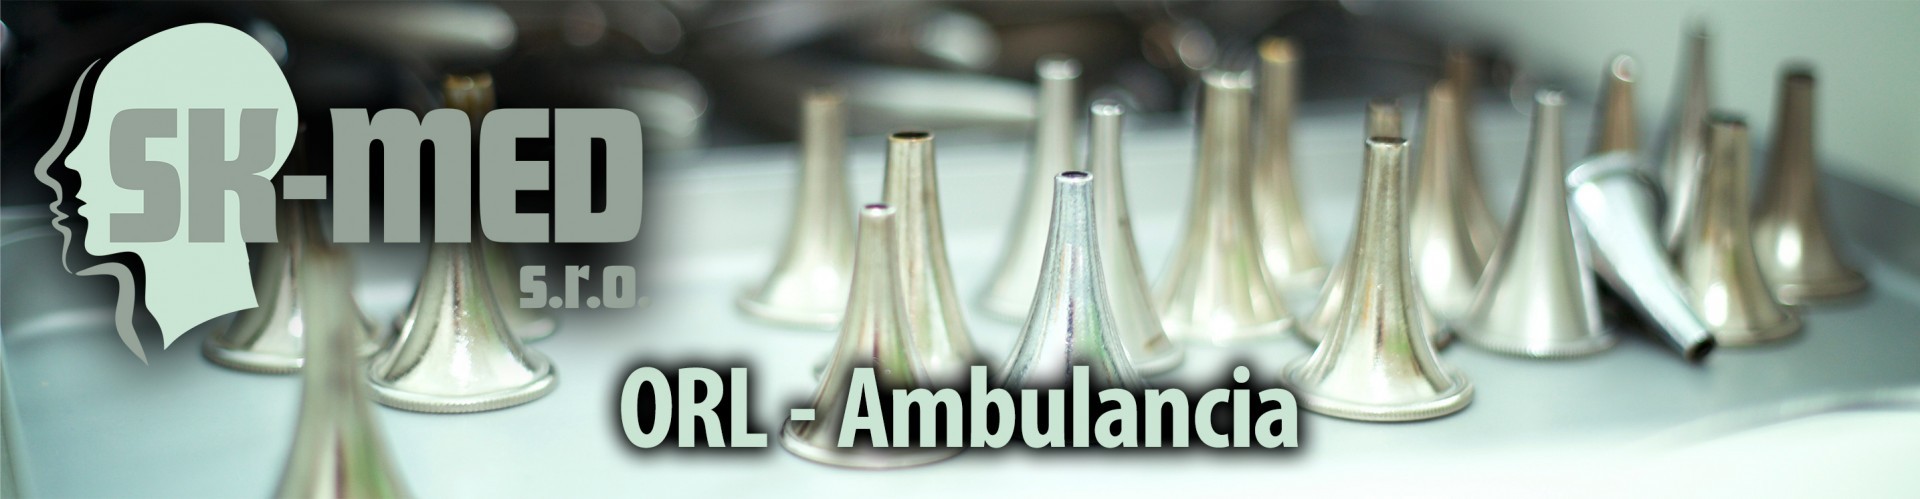 ORL - Ambulancia